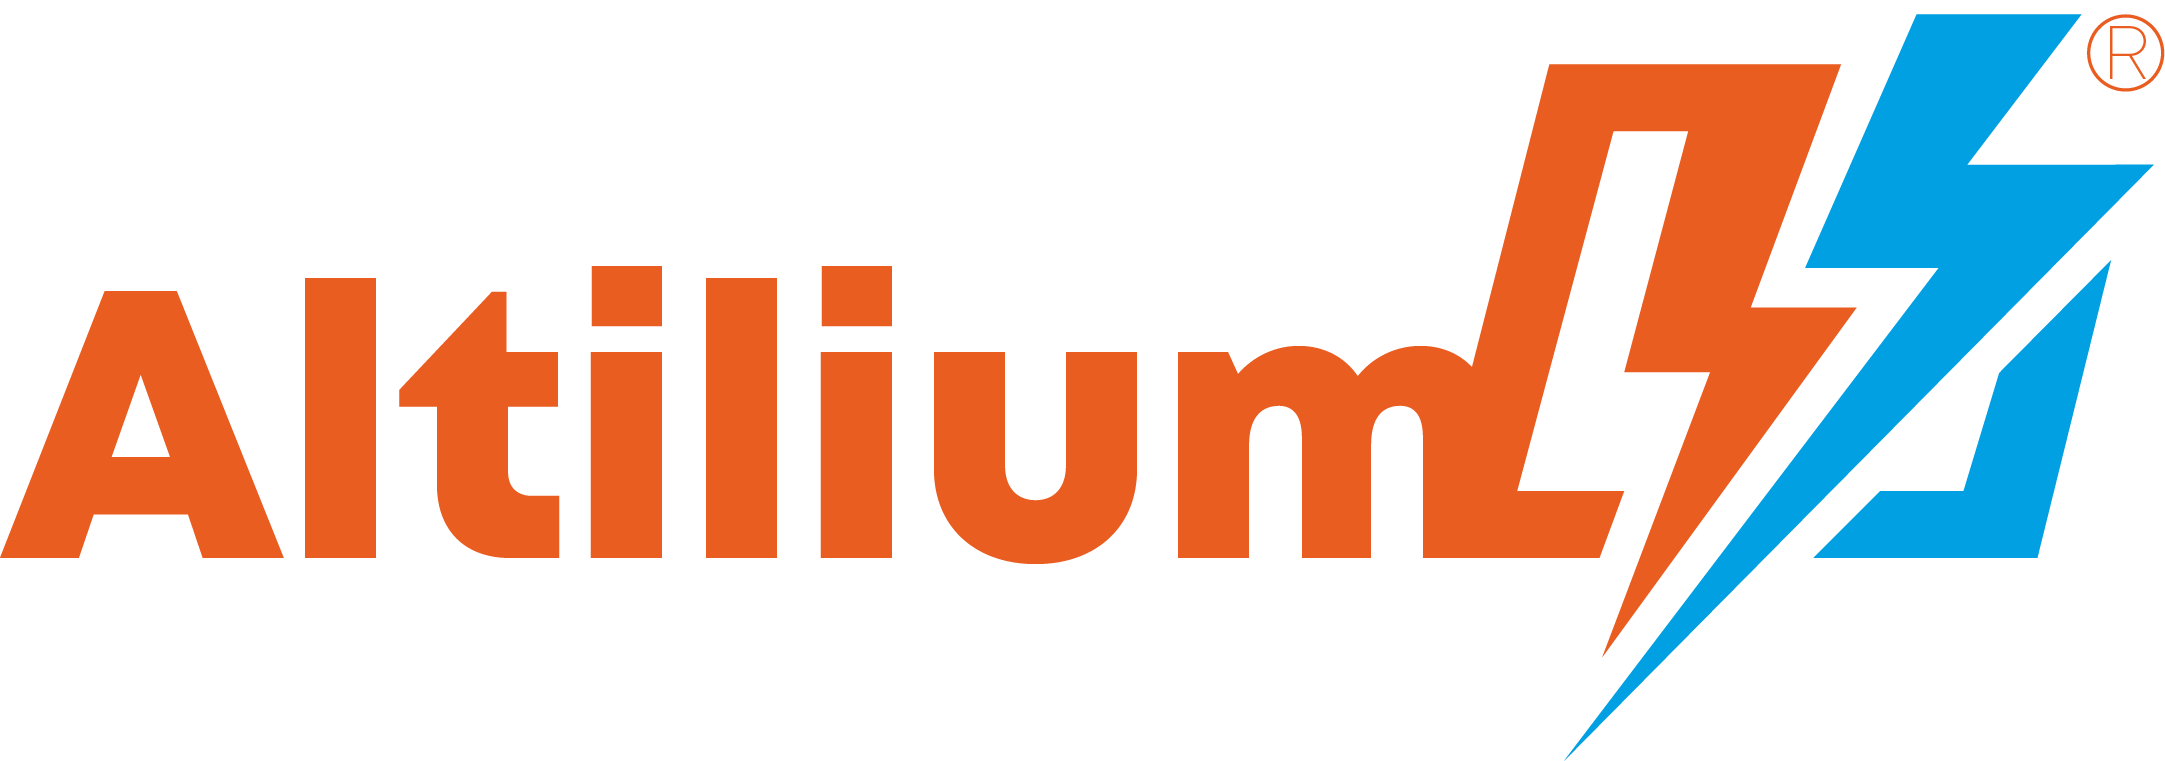 altilium